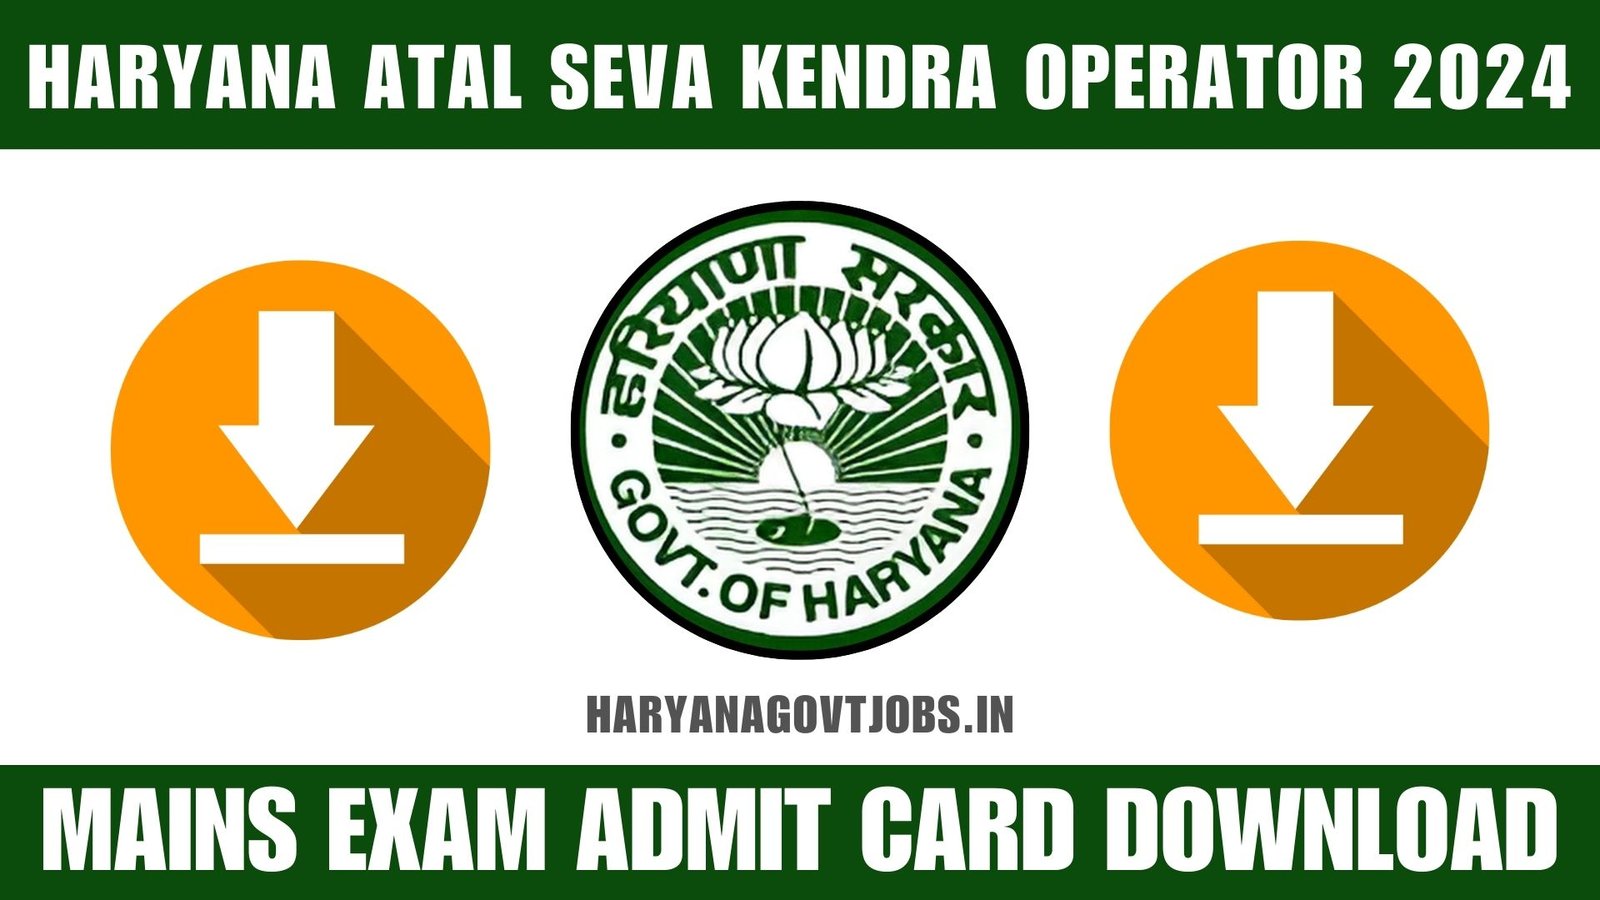 Haryana Atal Seva Kendra Operator 2024 Mains Exam Admit Card Download